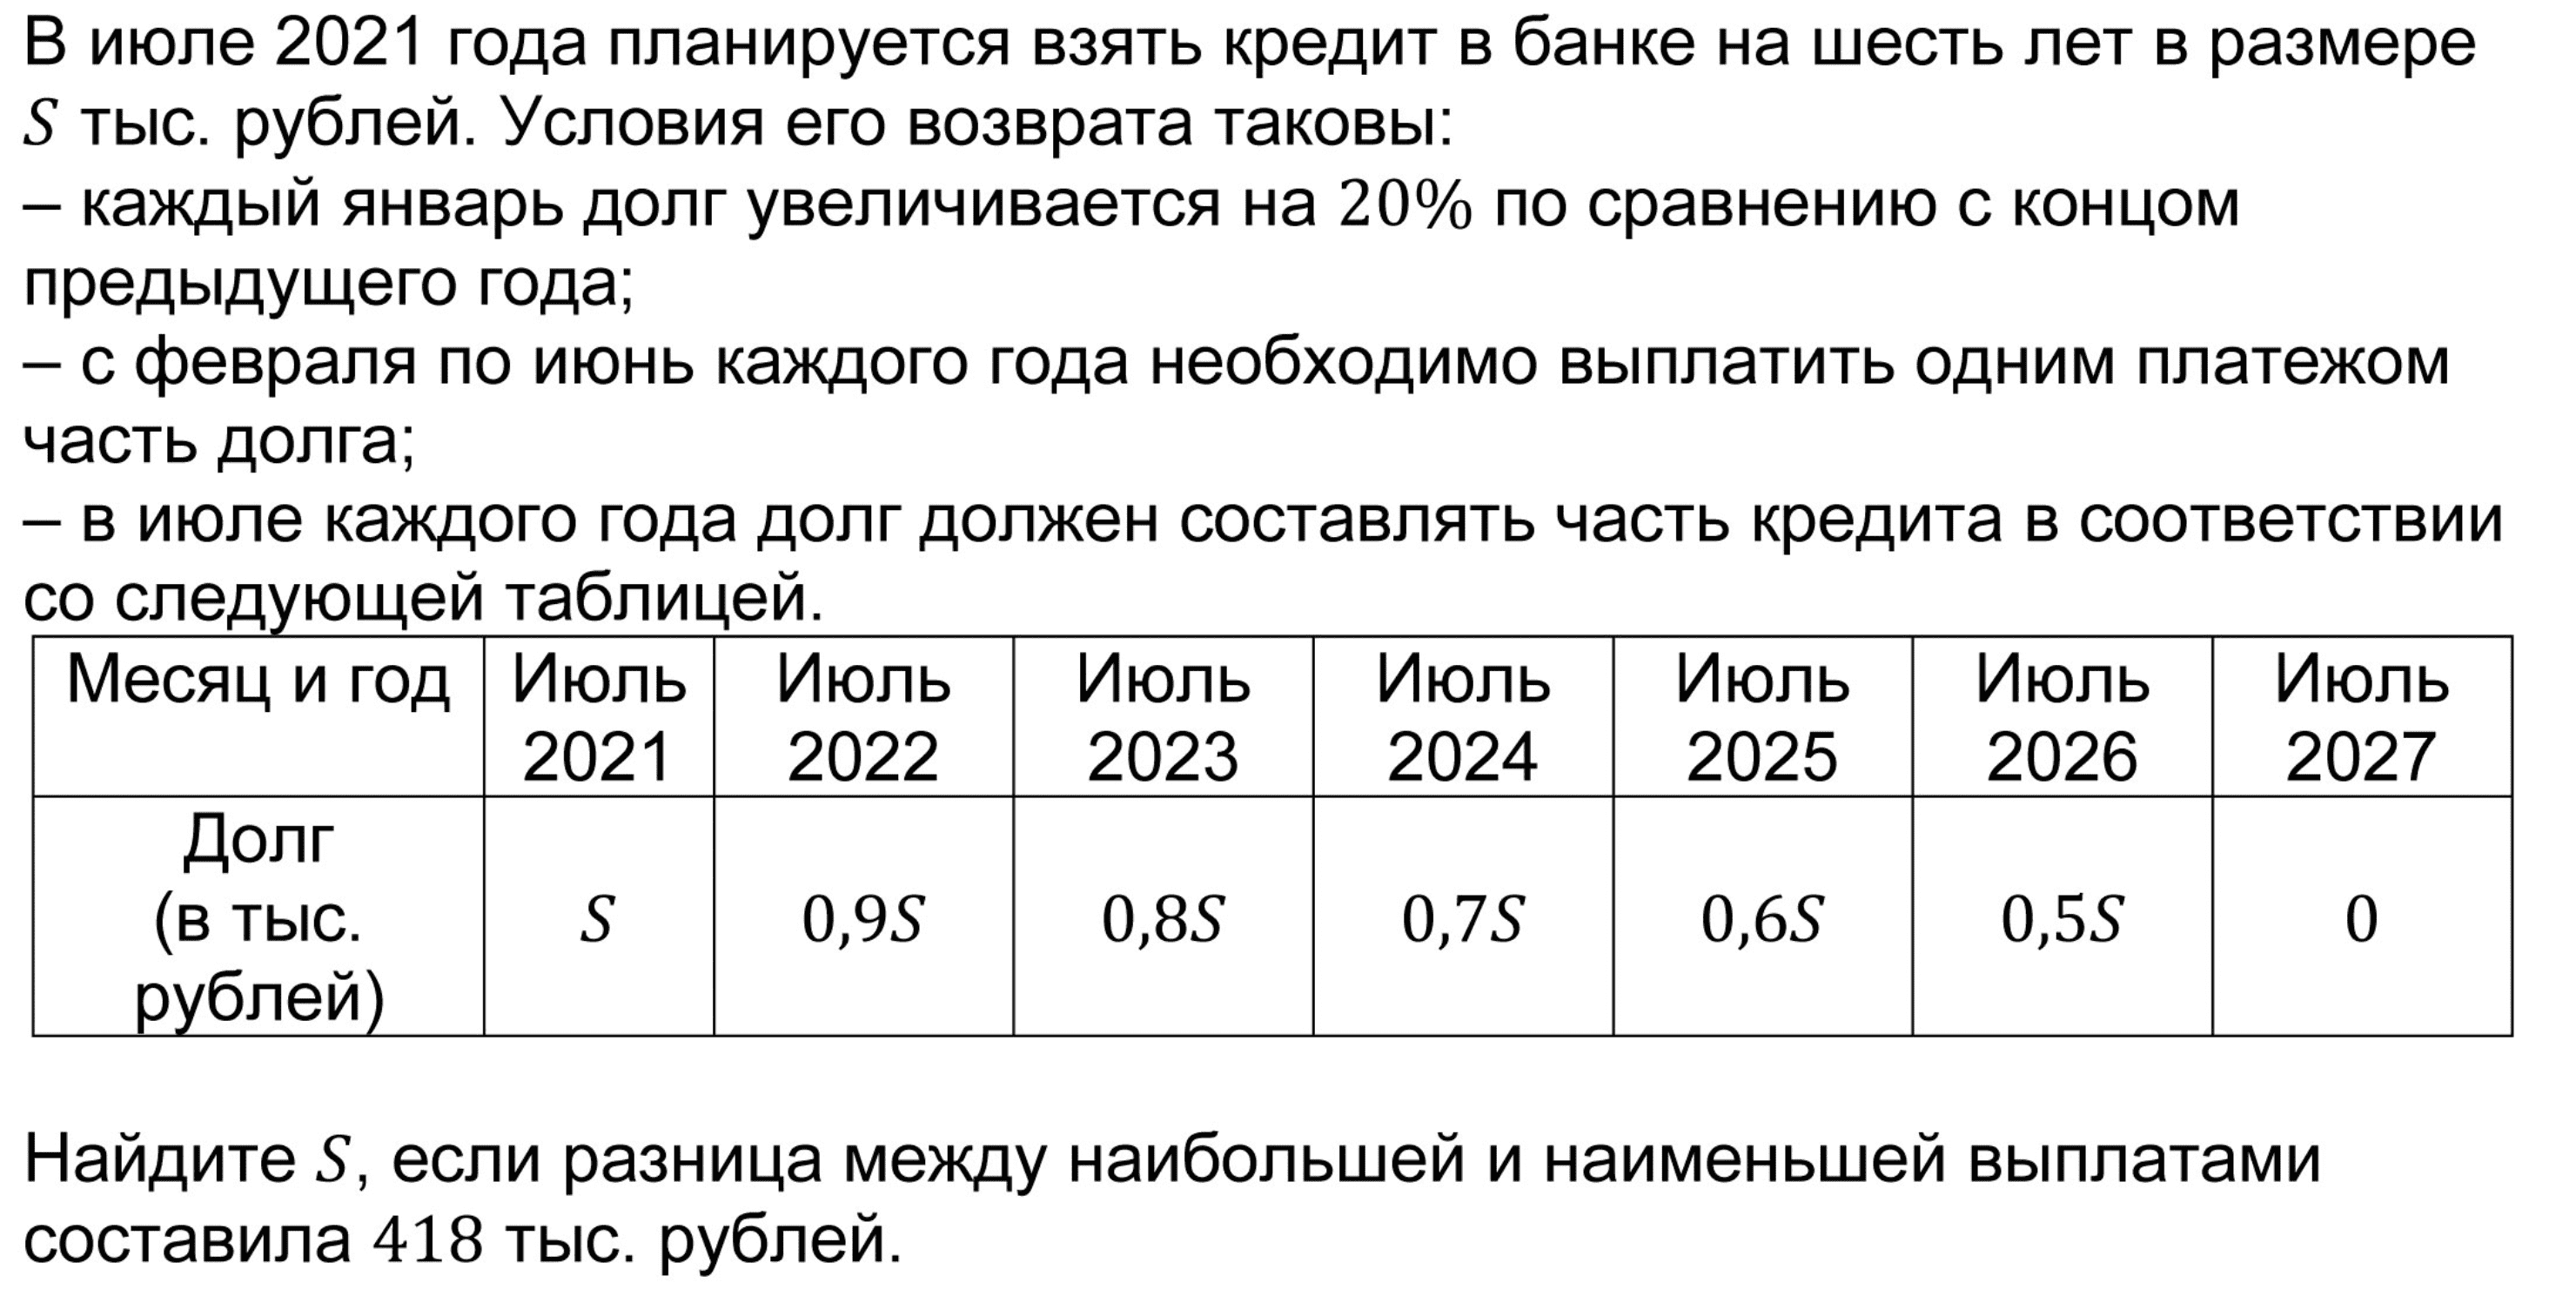 Сколько до 29 июня 2024. В июле 2026 года планируется. В июле 2025 года планируется. В июле 2026 году в банке взяли кредит. В июле 2026 планируется взять кредит.